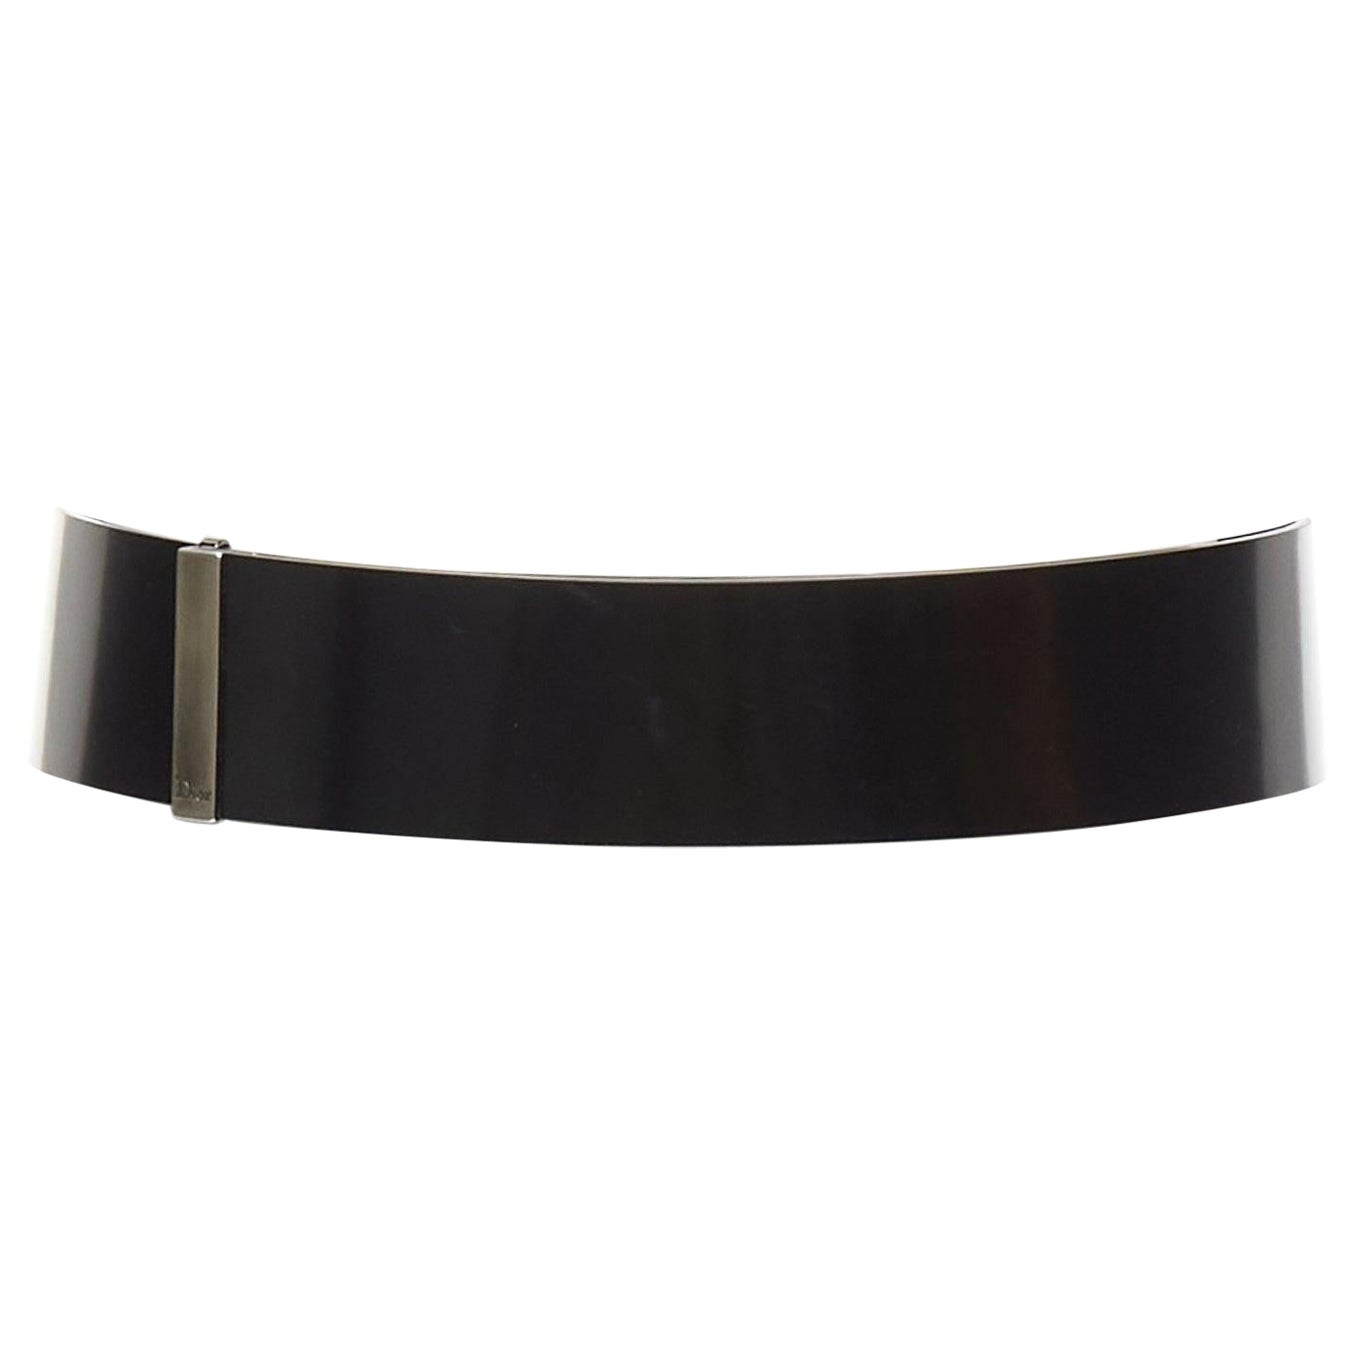 DIOR minimal logo metal bar black smooth calfskin wide belt 90cm For Sale